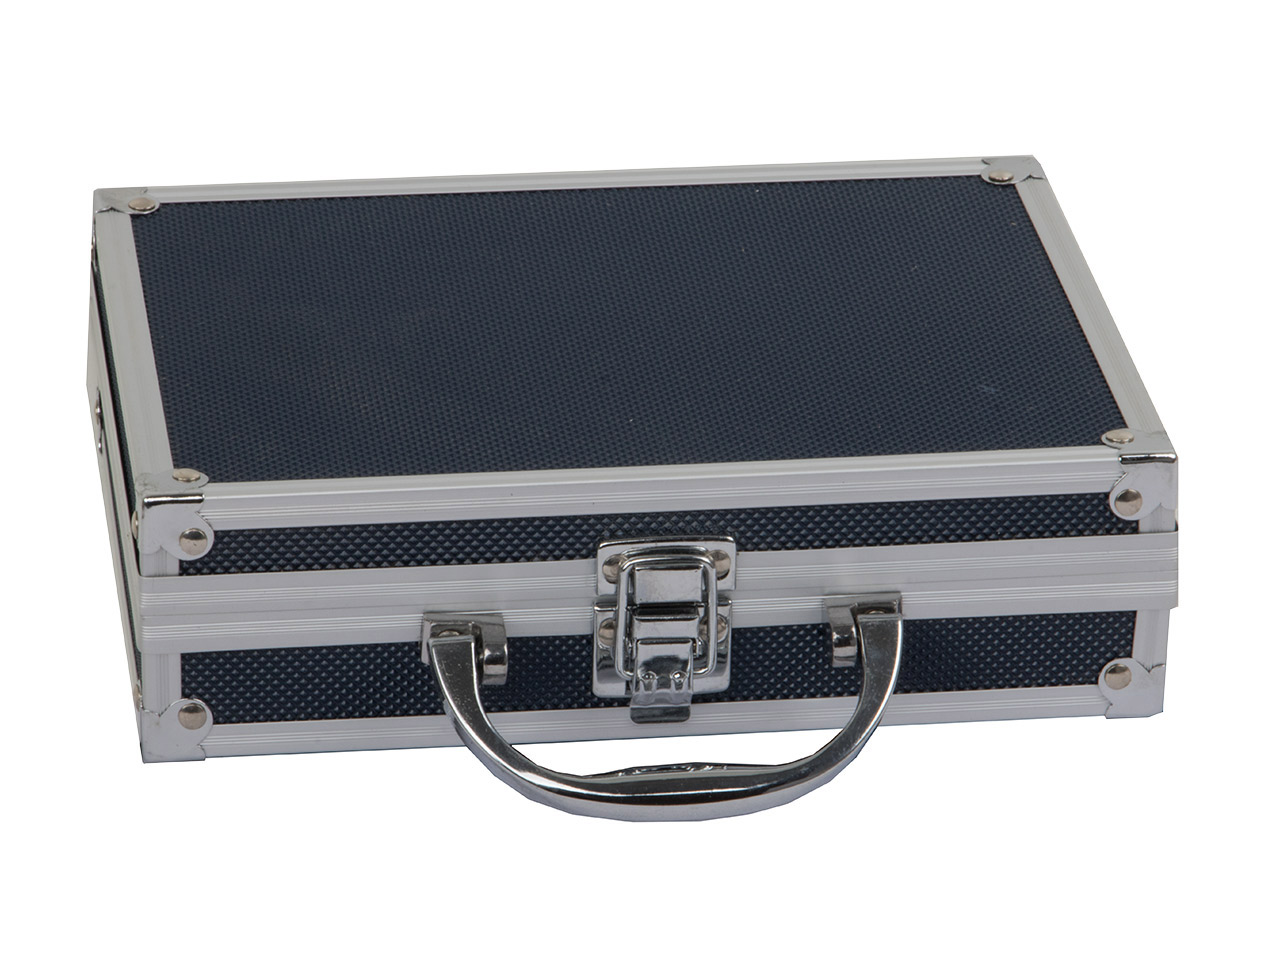 Pistolenkoffer Transportkoffer 20 x 15 x 5 cm Aluminium Stahlecken Schaumstoffeinsatz blau für Kleinteile